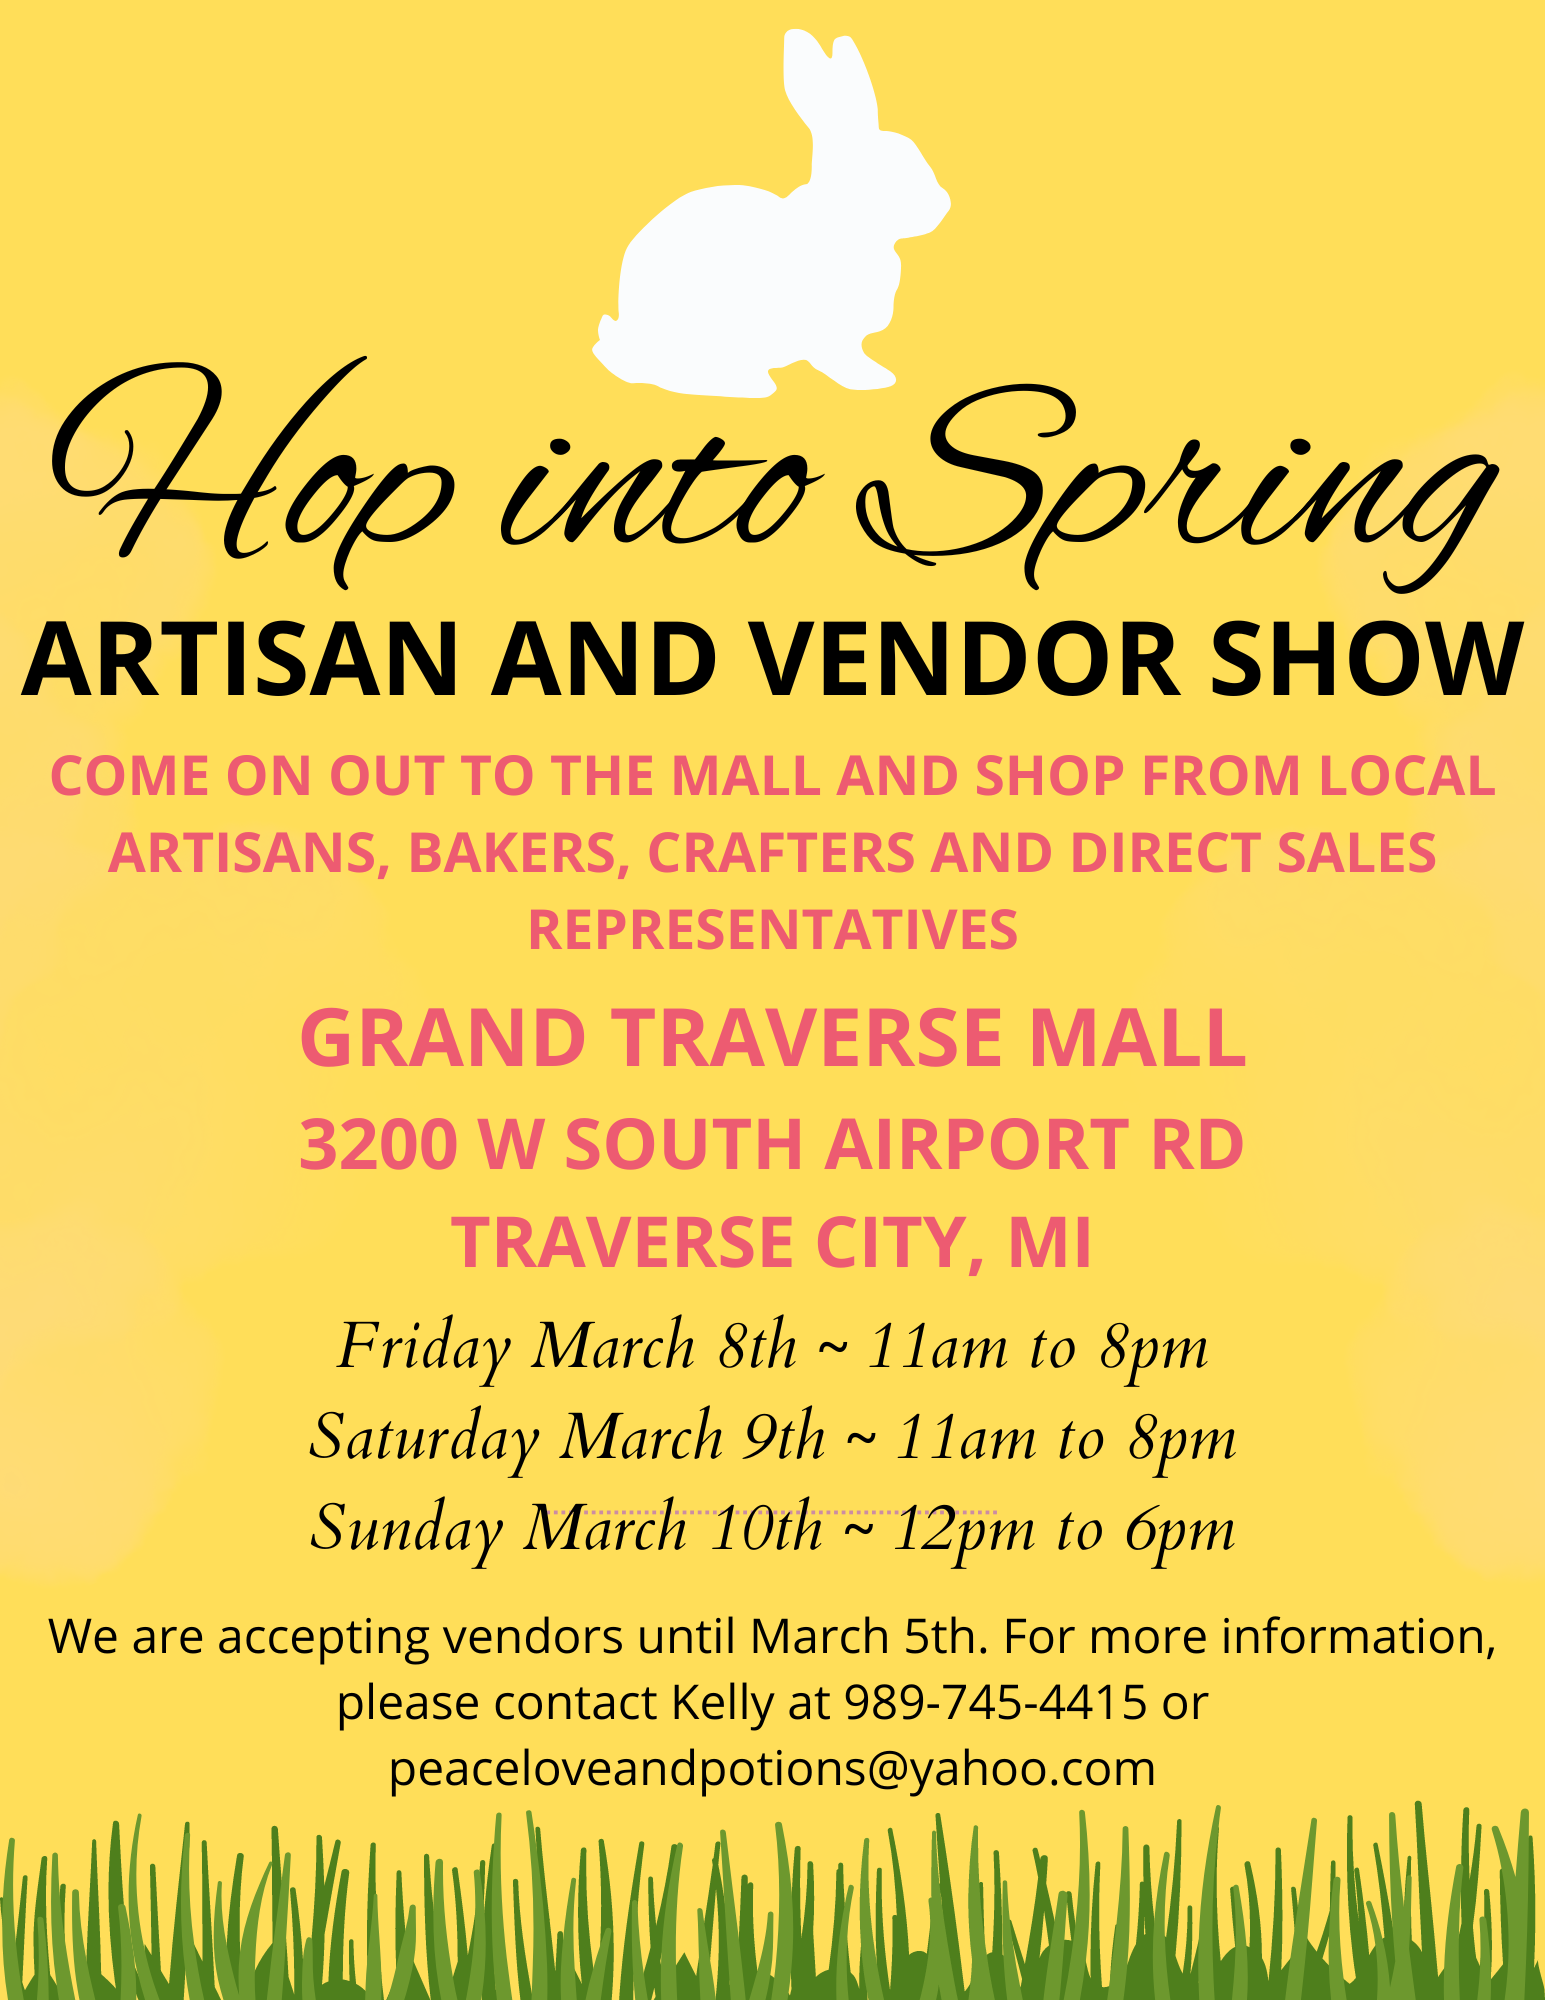 Hop into Spring Artisan and Vendor Show flyer